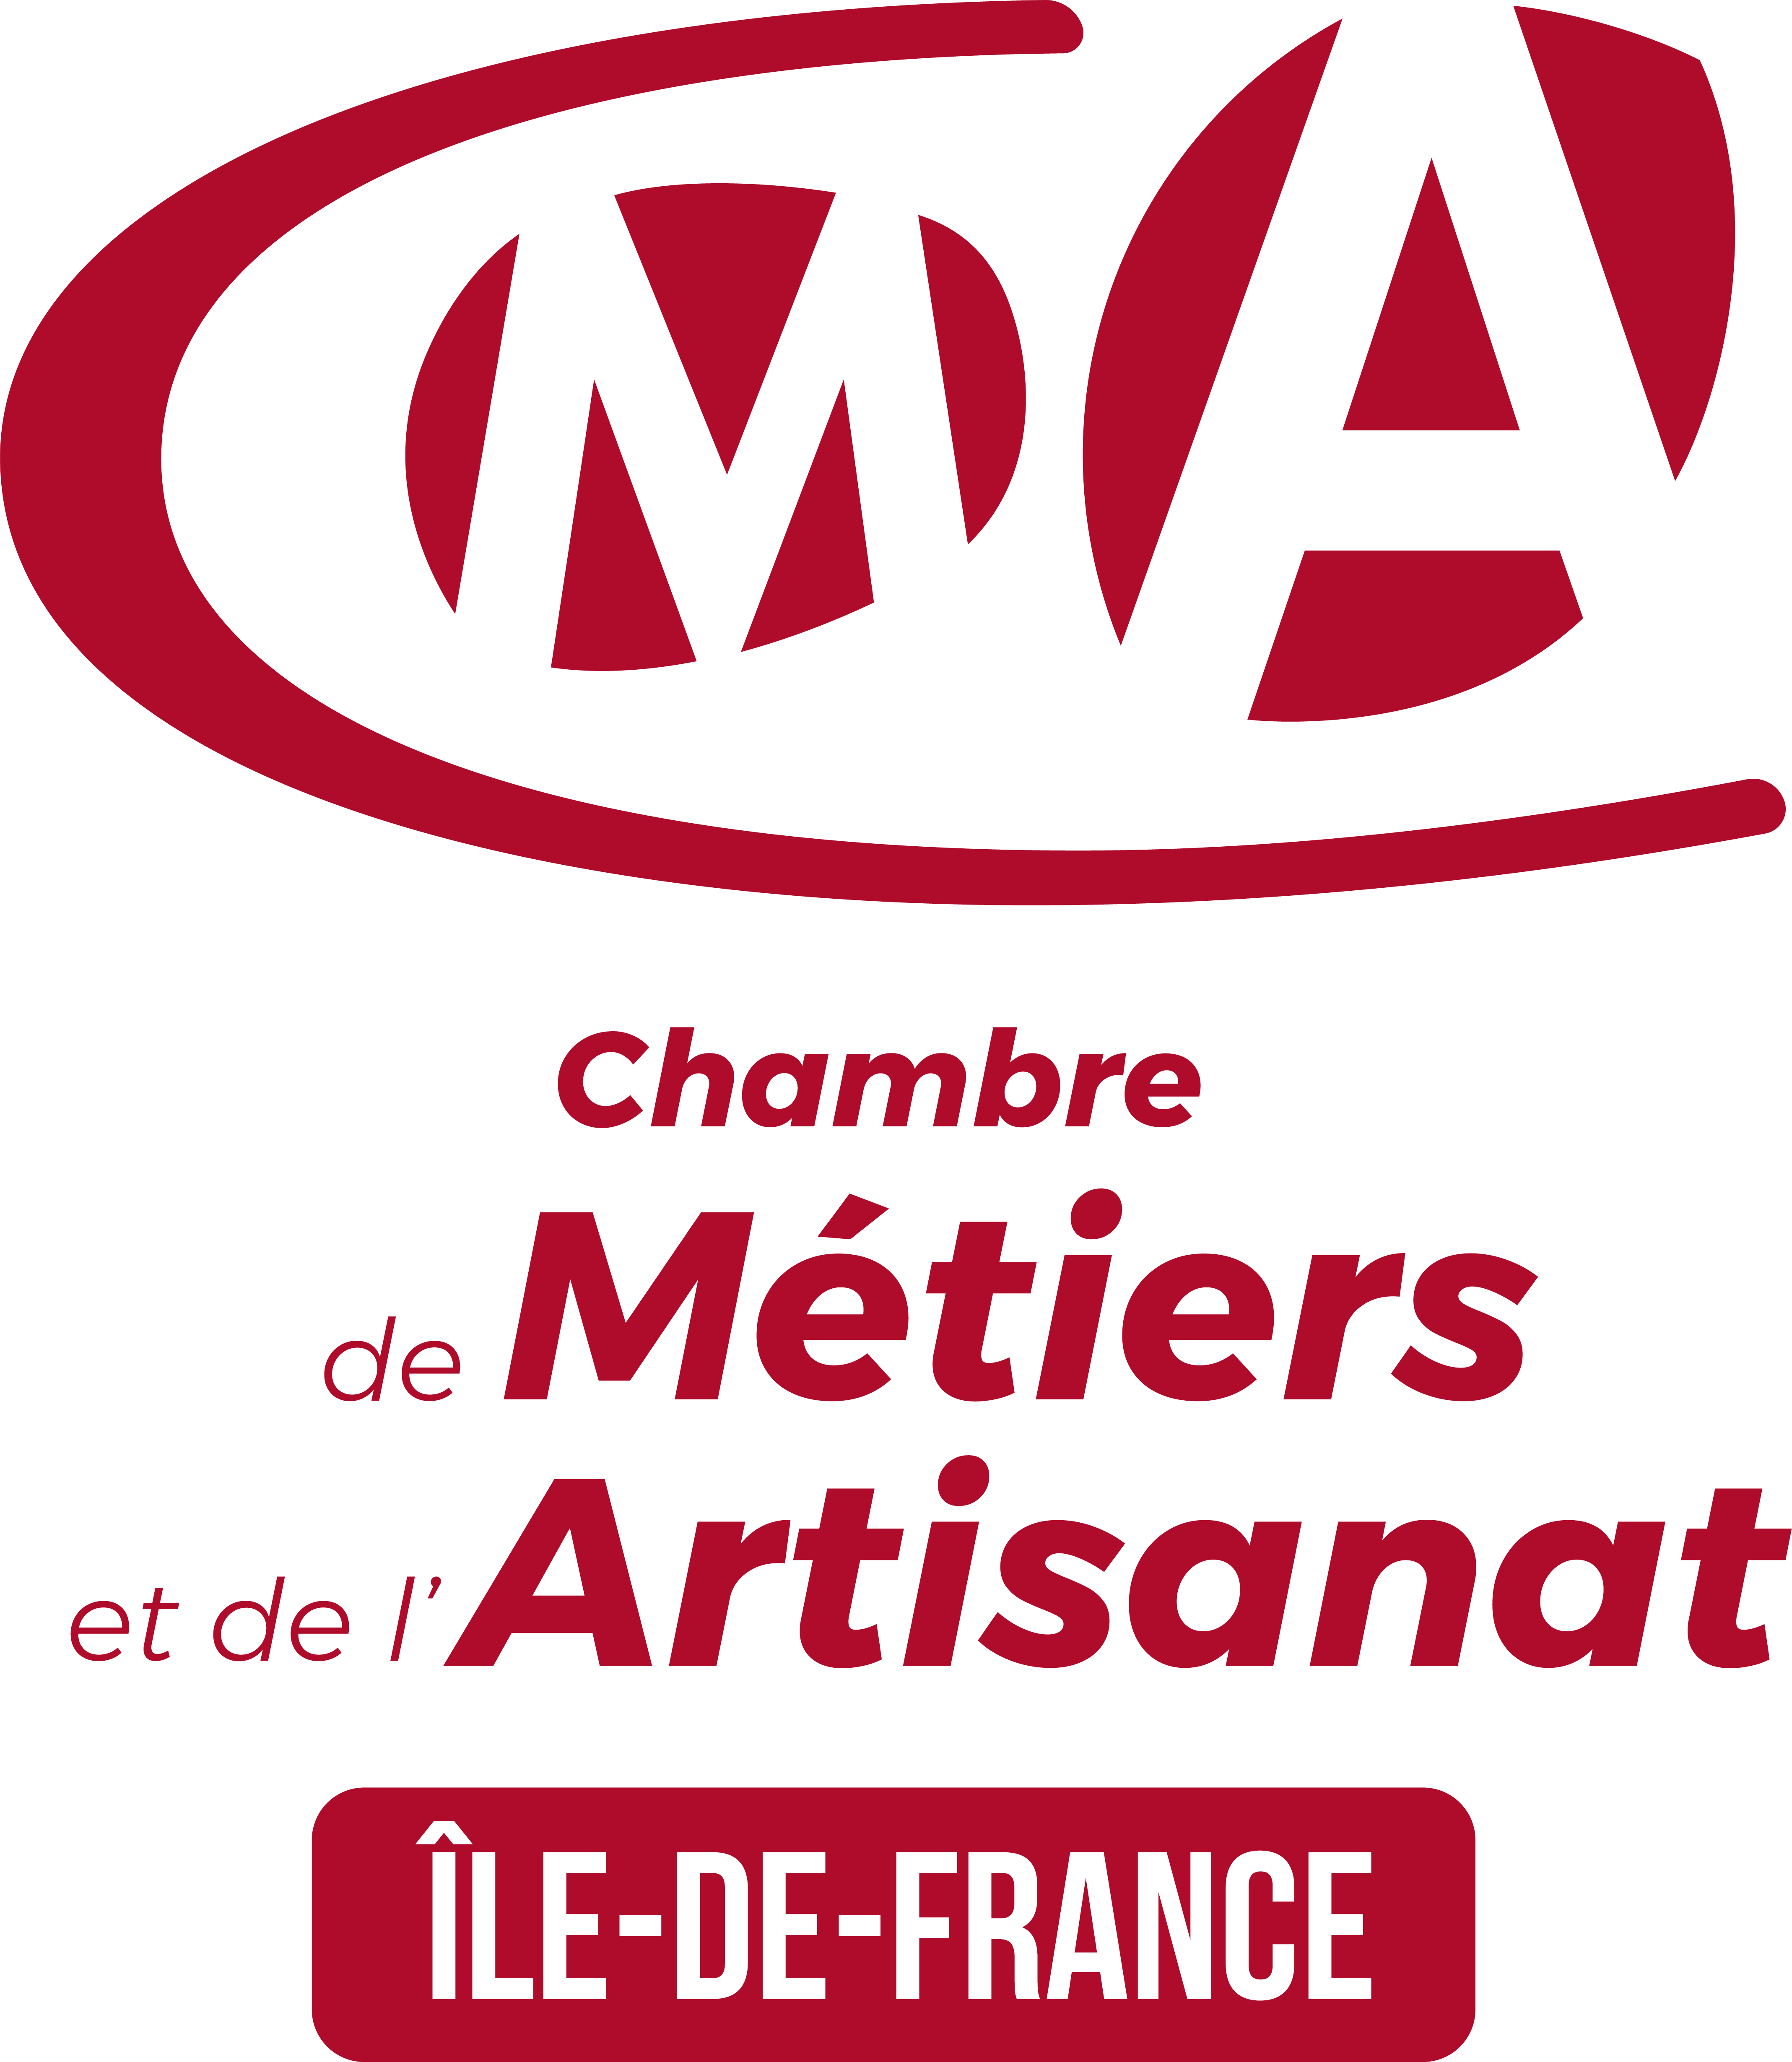 CMA Ile de France - Partenaire CCPL